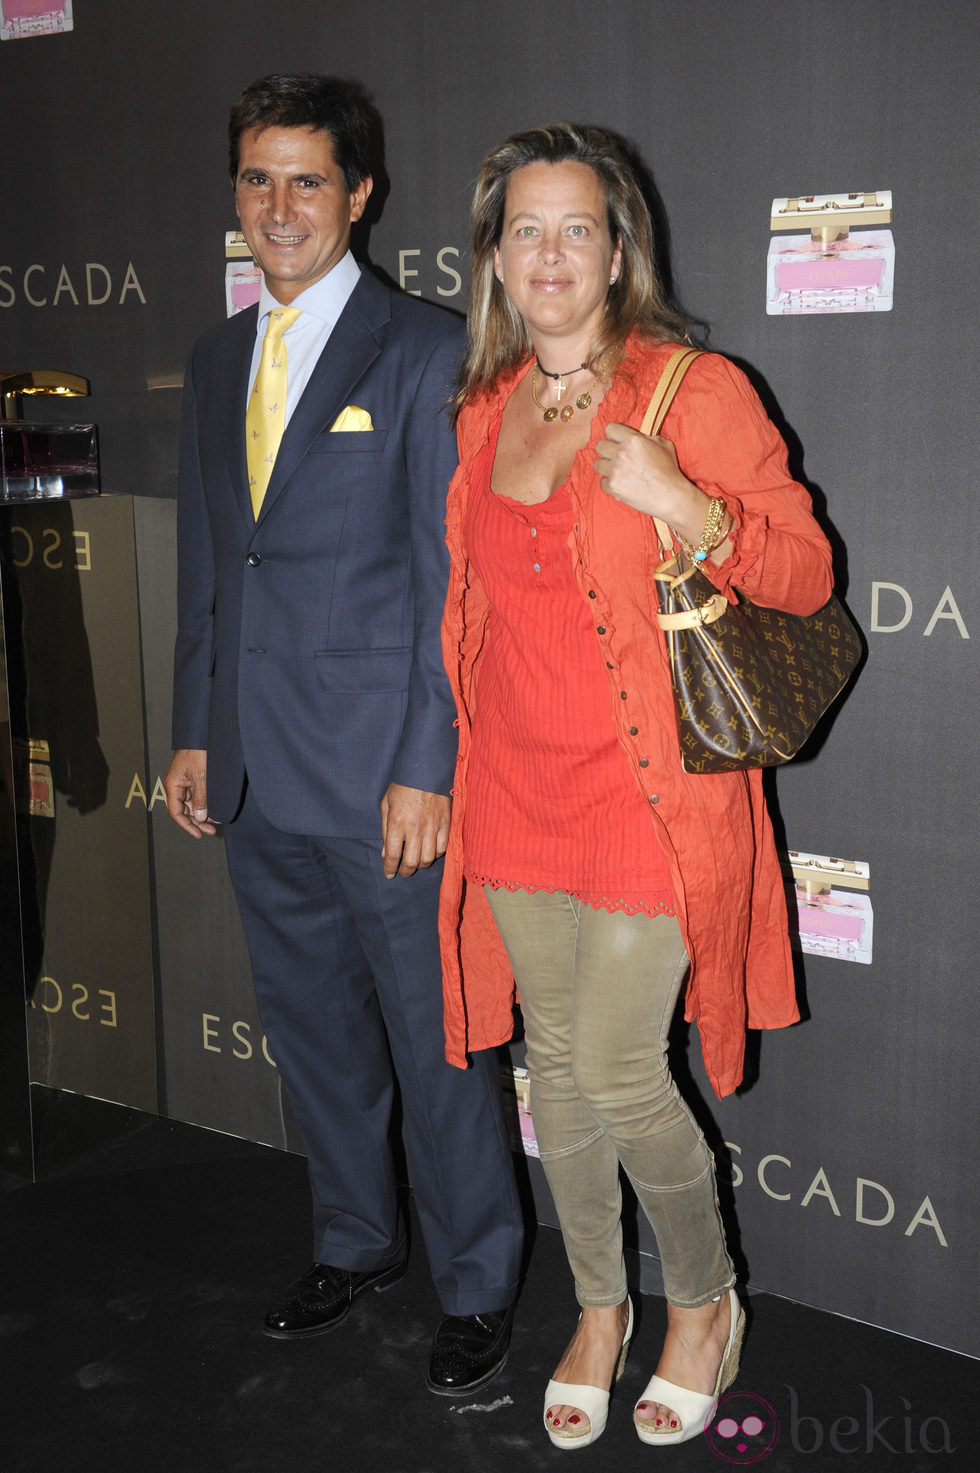 Alejo Martínez Bordiú y su mujer Patricia Carulla en la fiesta de inauguración de la tienda Escada en Barcelona